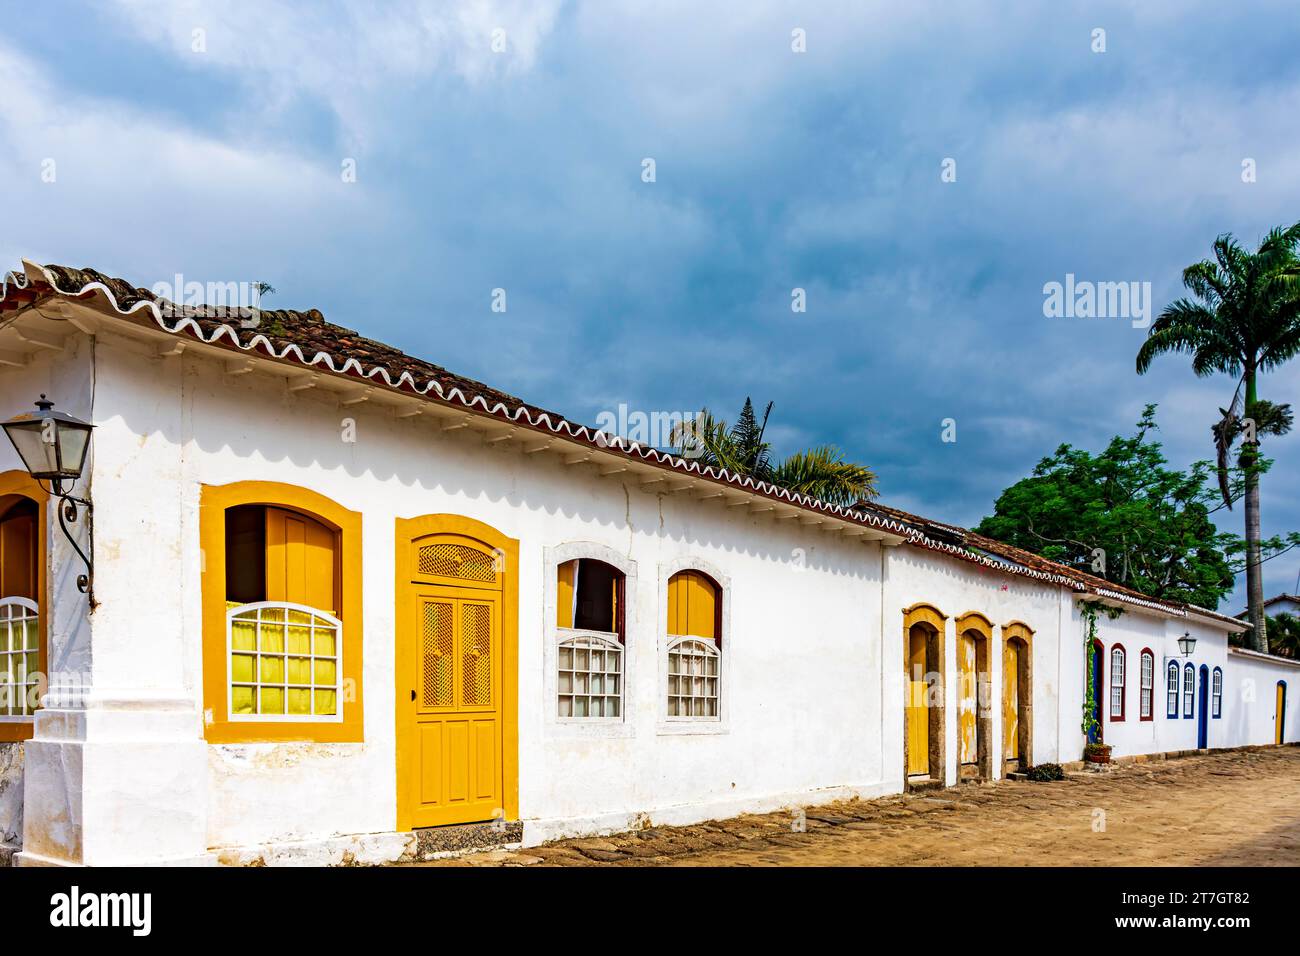 Maisons historiques de style colonial dans une vieille rue de la célèbre ville de Paraty dans l'état de Rio de Janeiro, Brésil Banque D'Images